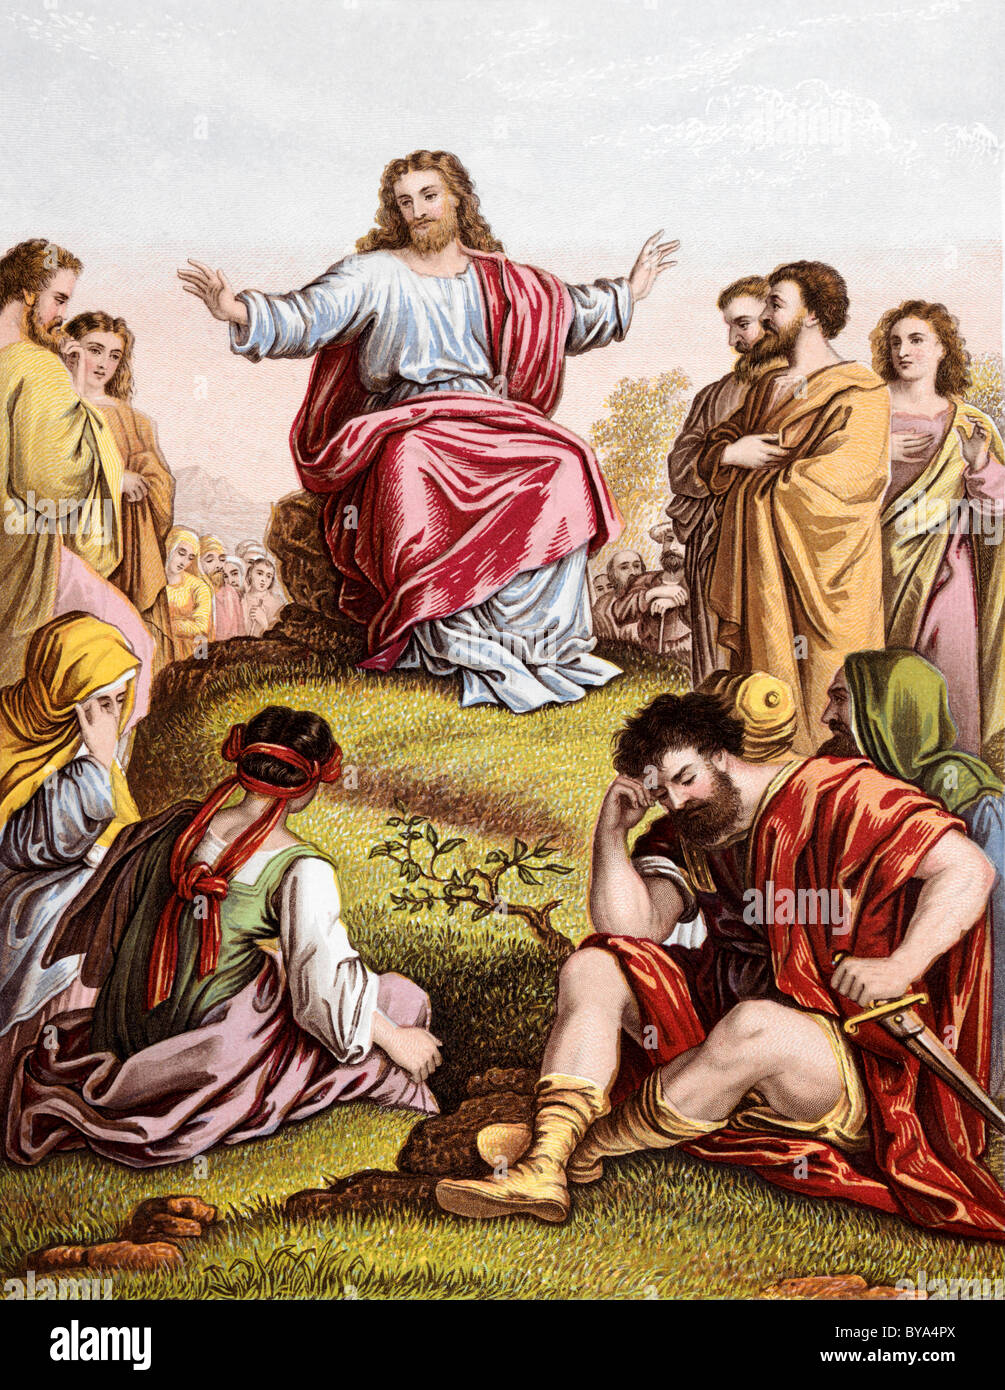 Historias Bíblicas ilustración de Jesús y el Sermón de la montaña Foto de stock